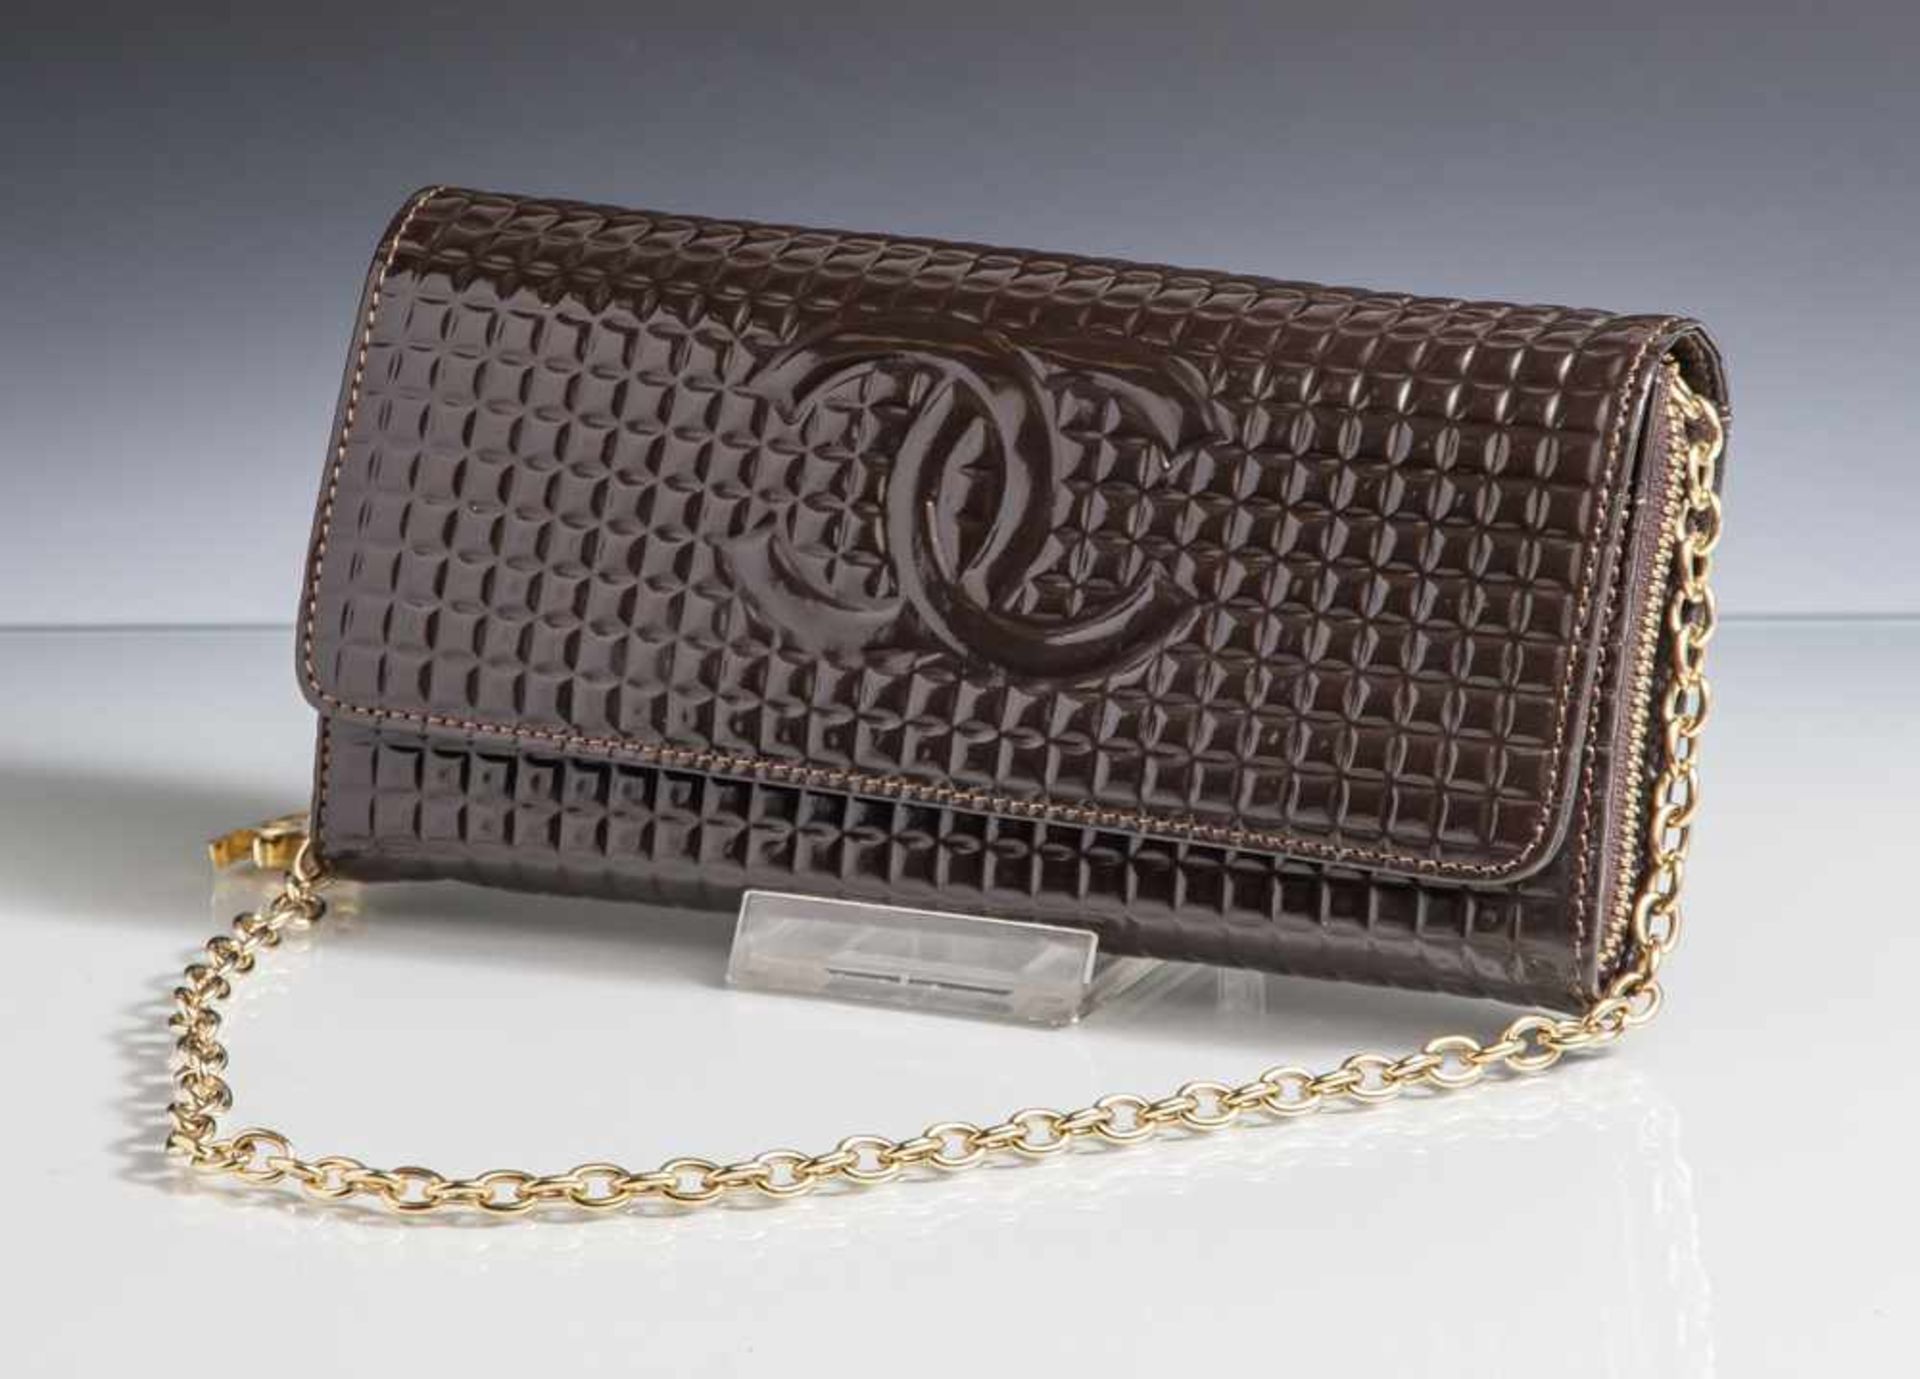 Kleine Coco Chanel Handtasche, braun hochglanz, aufwendige Inneneinteilung mit Portmonee, Fächer für